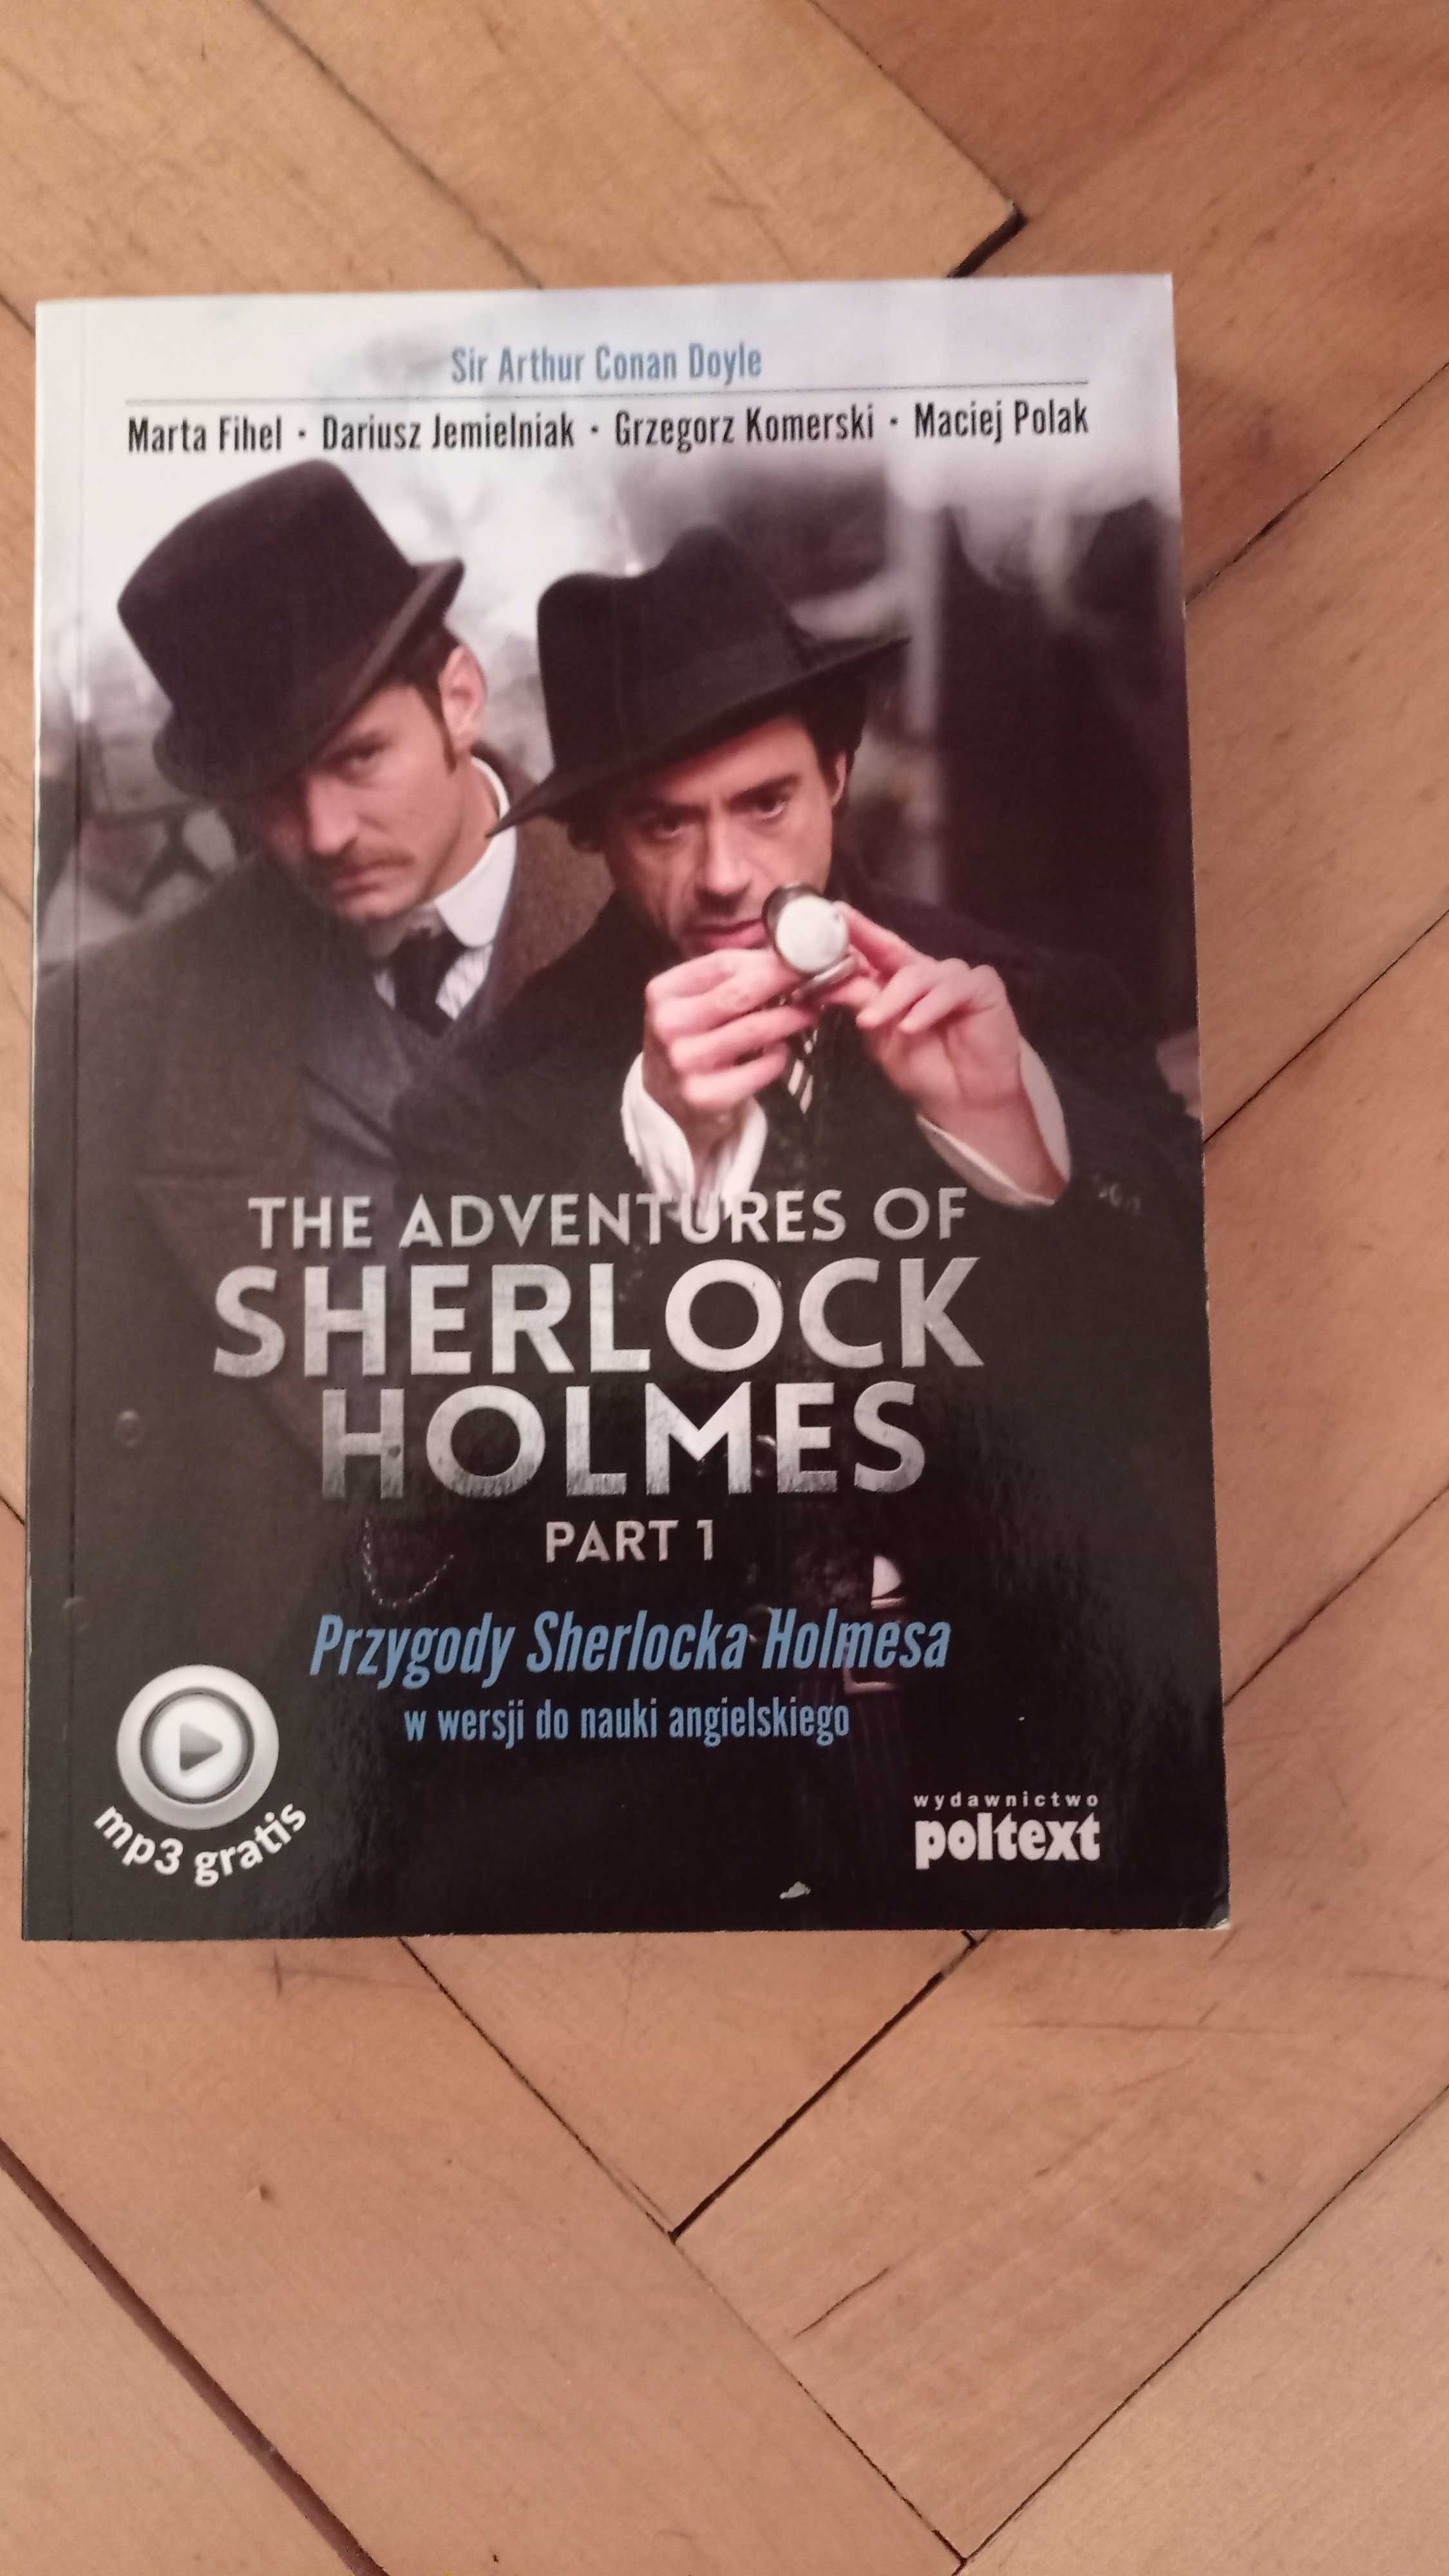 Przygody Sherlocka Holmesa w wersji do nauki angielskiego